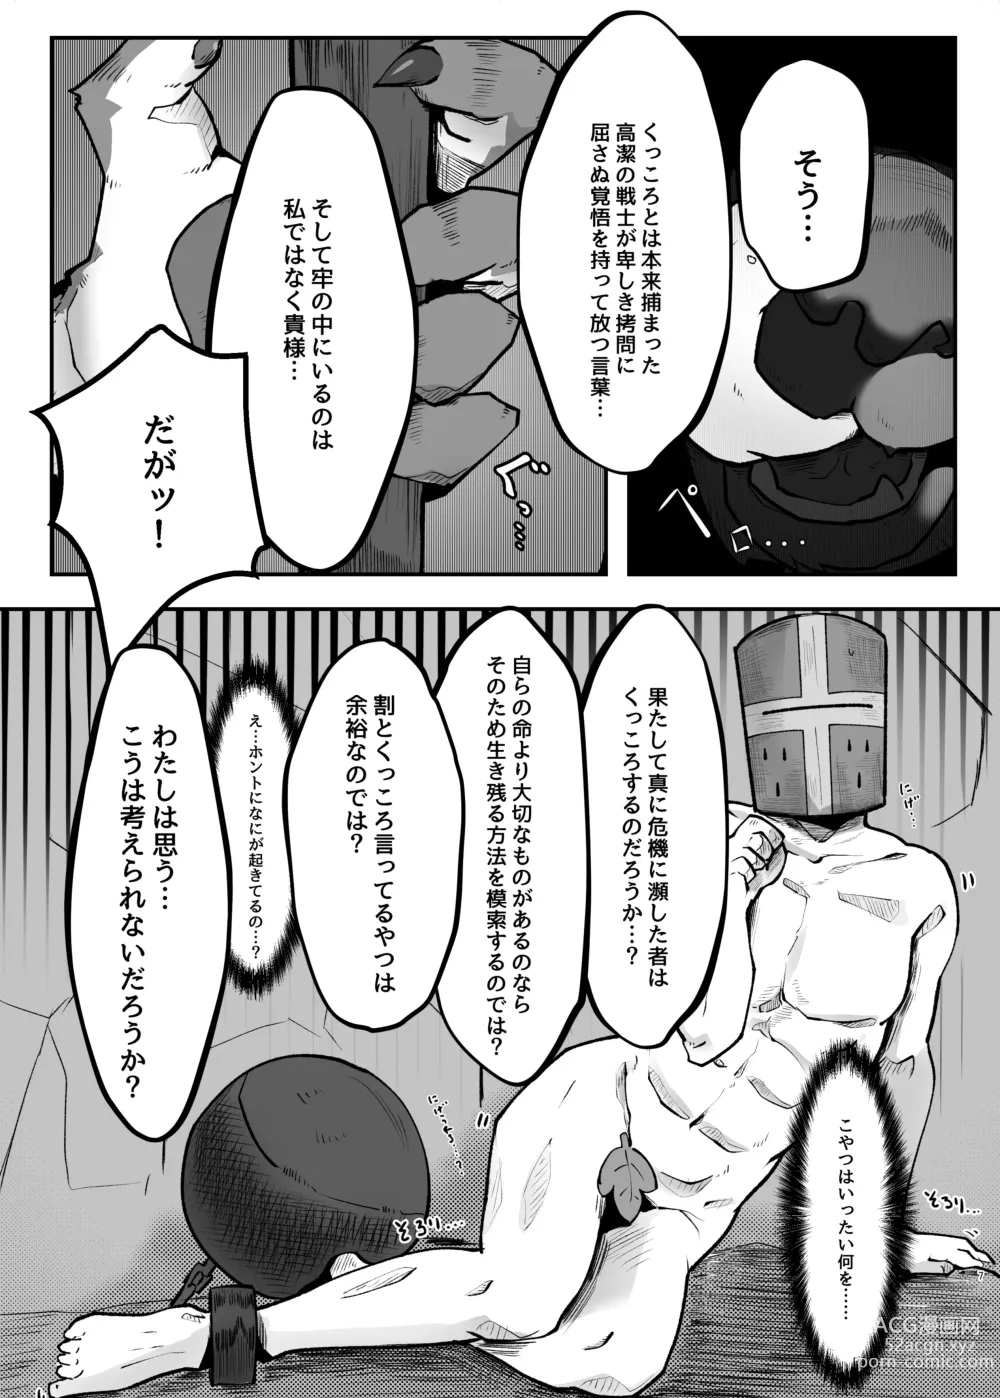 Page 7 of doujinshi Kukkoro kara hajimaru kemoero manga